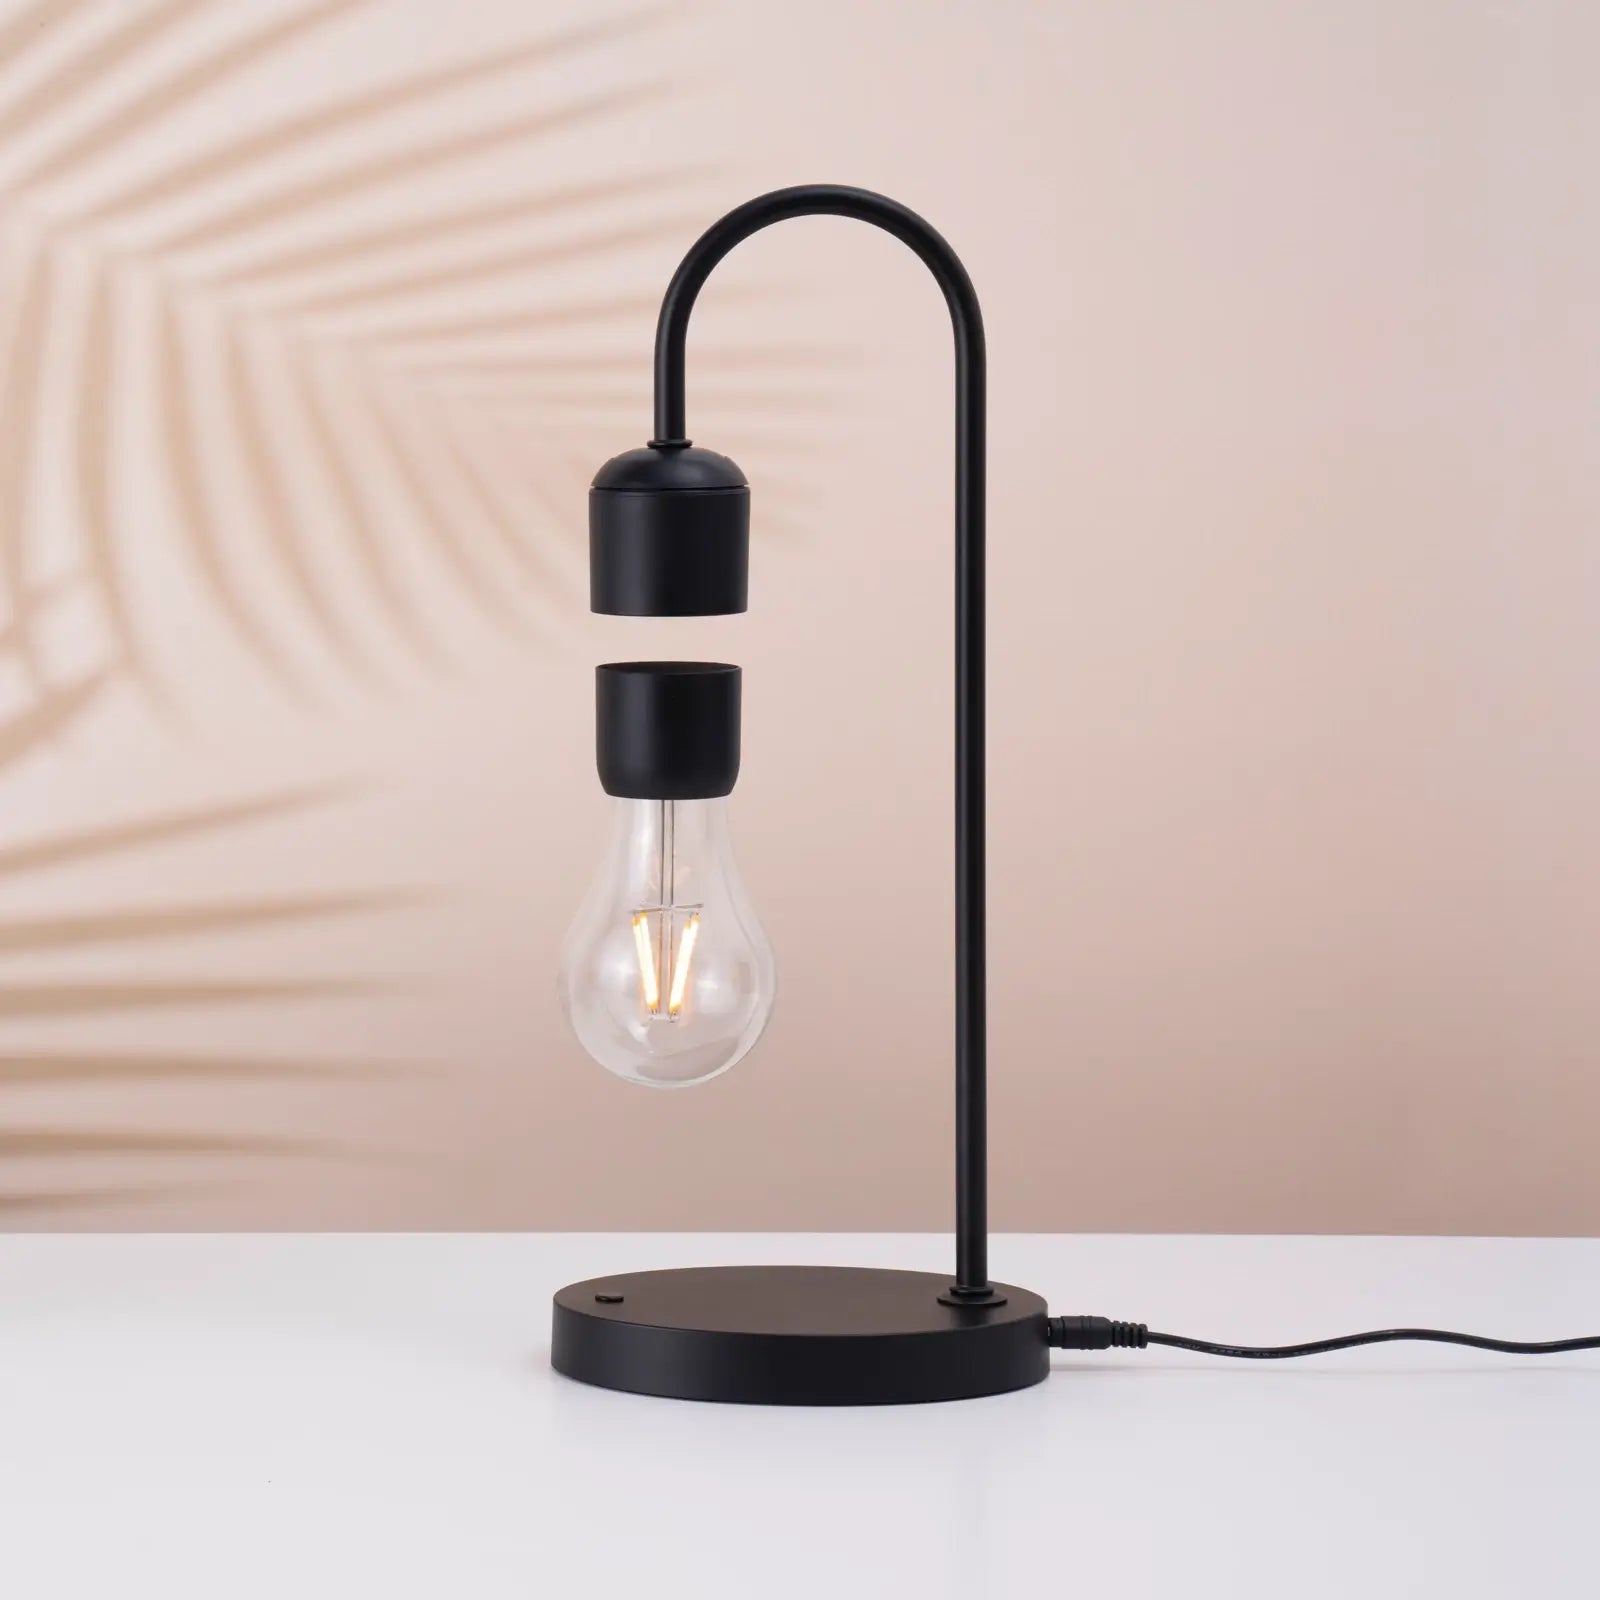 Magnetic Levitating Lamp - Cool Gadget